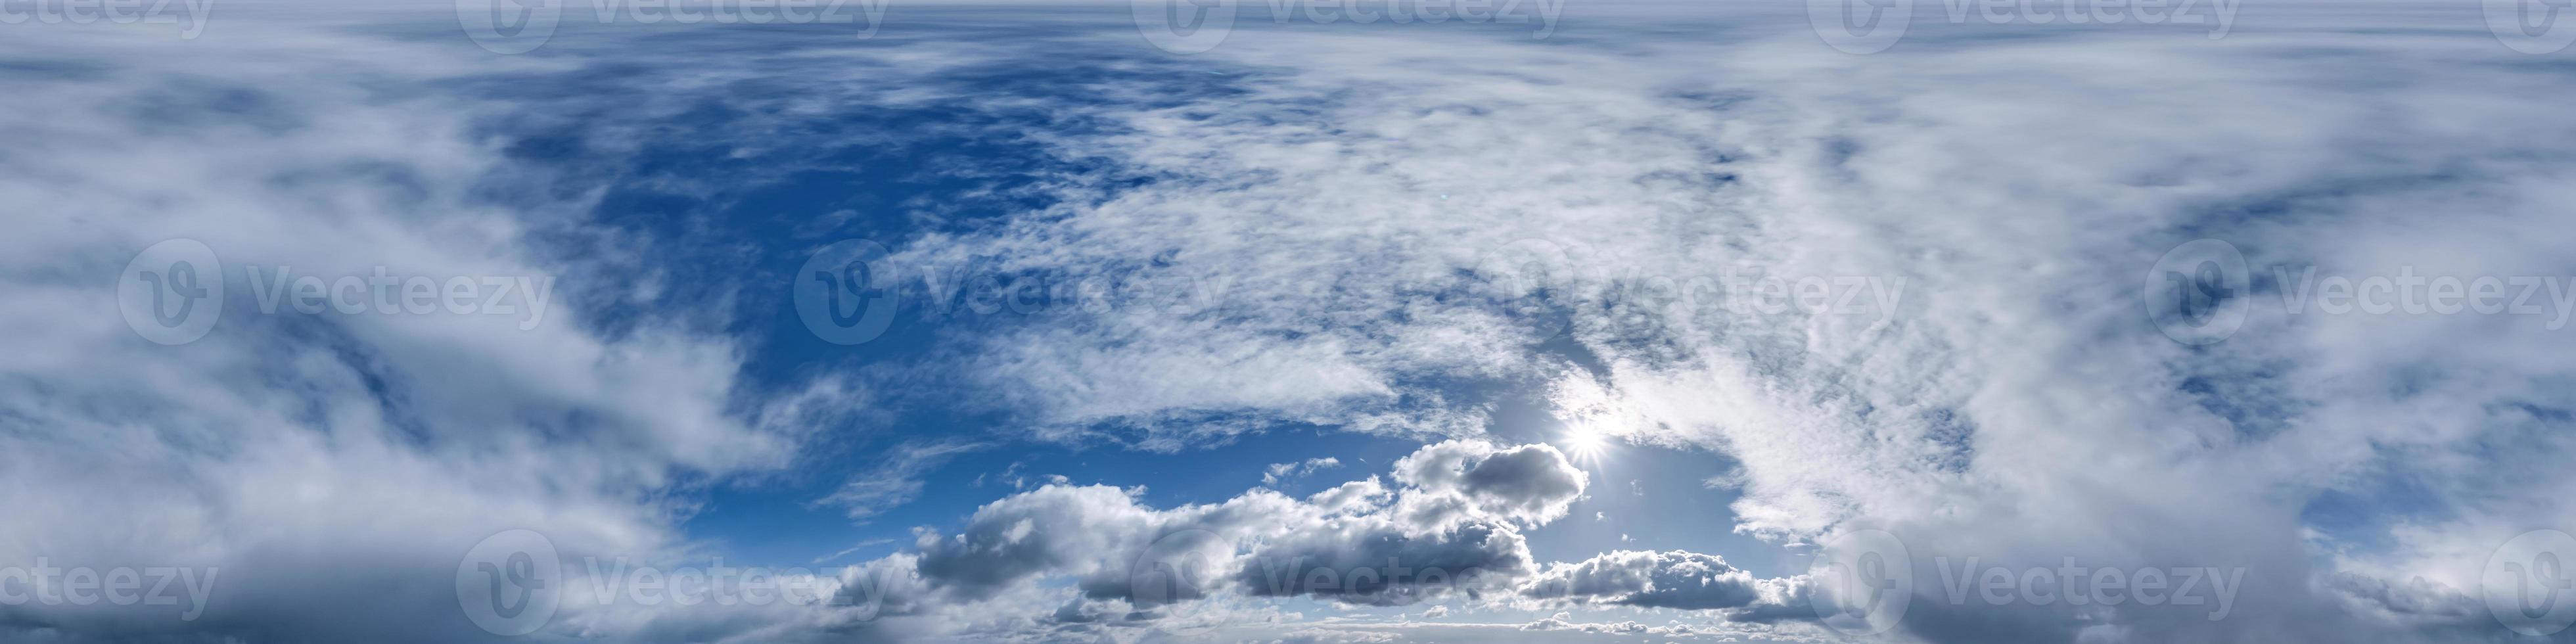 céu azul com nuvens cumulus como panorama hdri 360 sem costura com zênite em projeção equiretangular esférica pode ser usado para substituição da cúpula do céu em gráficos 3D ou desenvolvimento de jogos e edição de tiro de drone foto